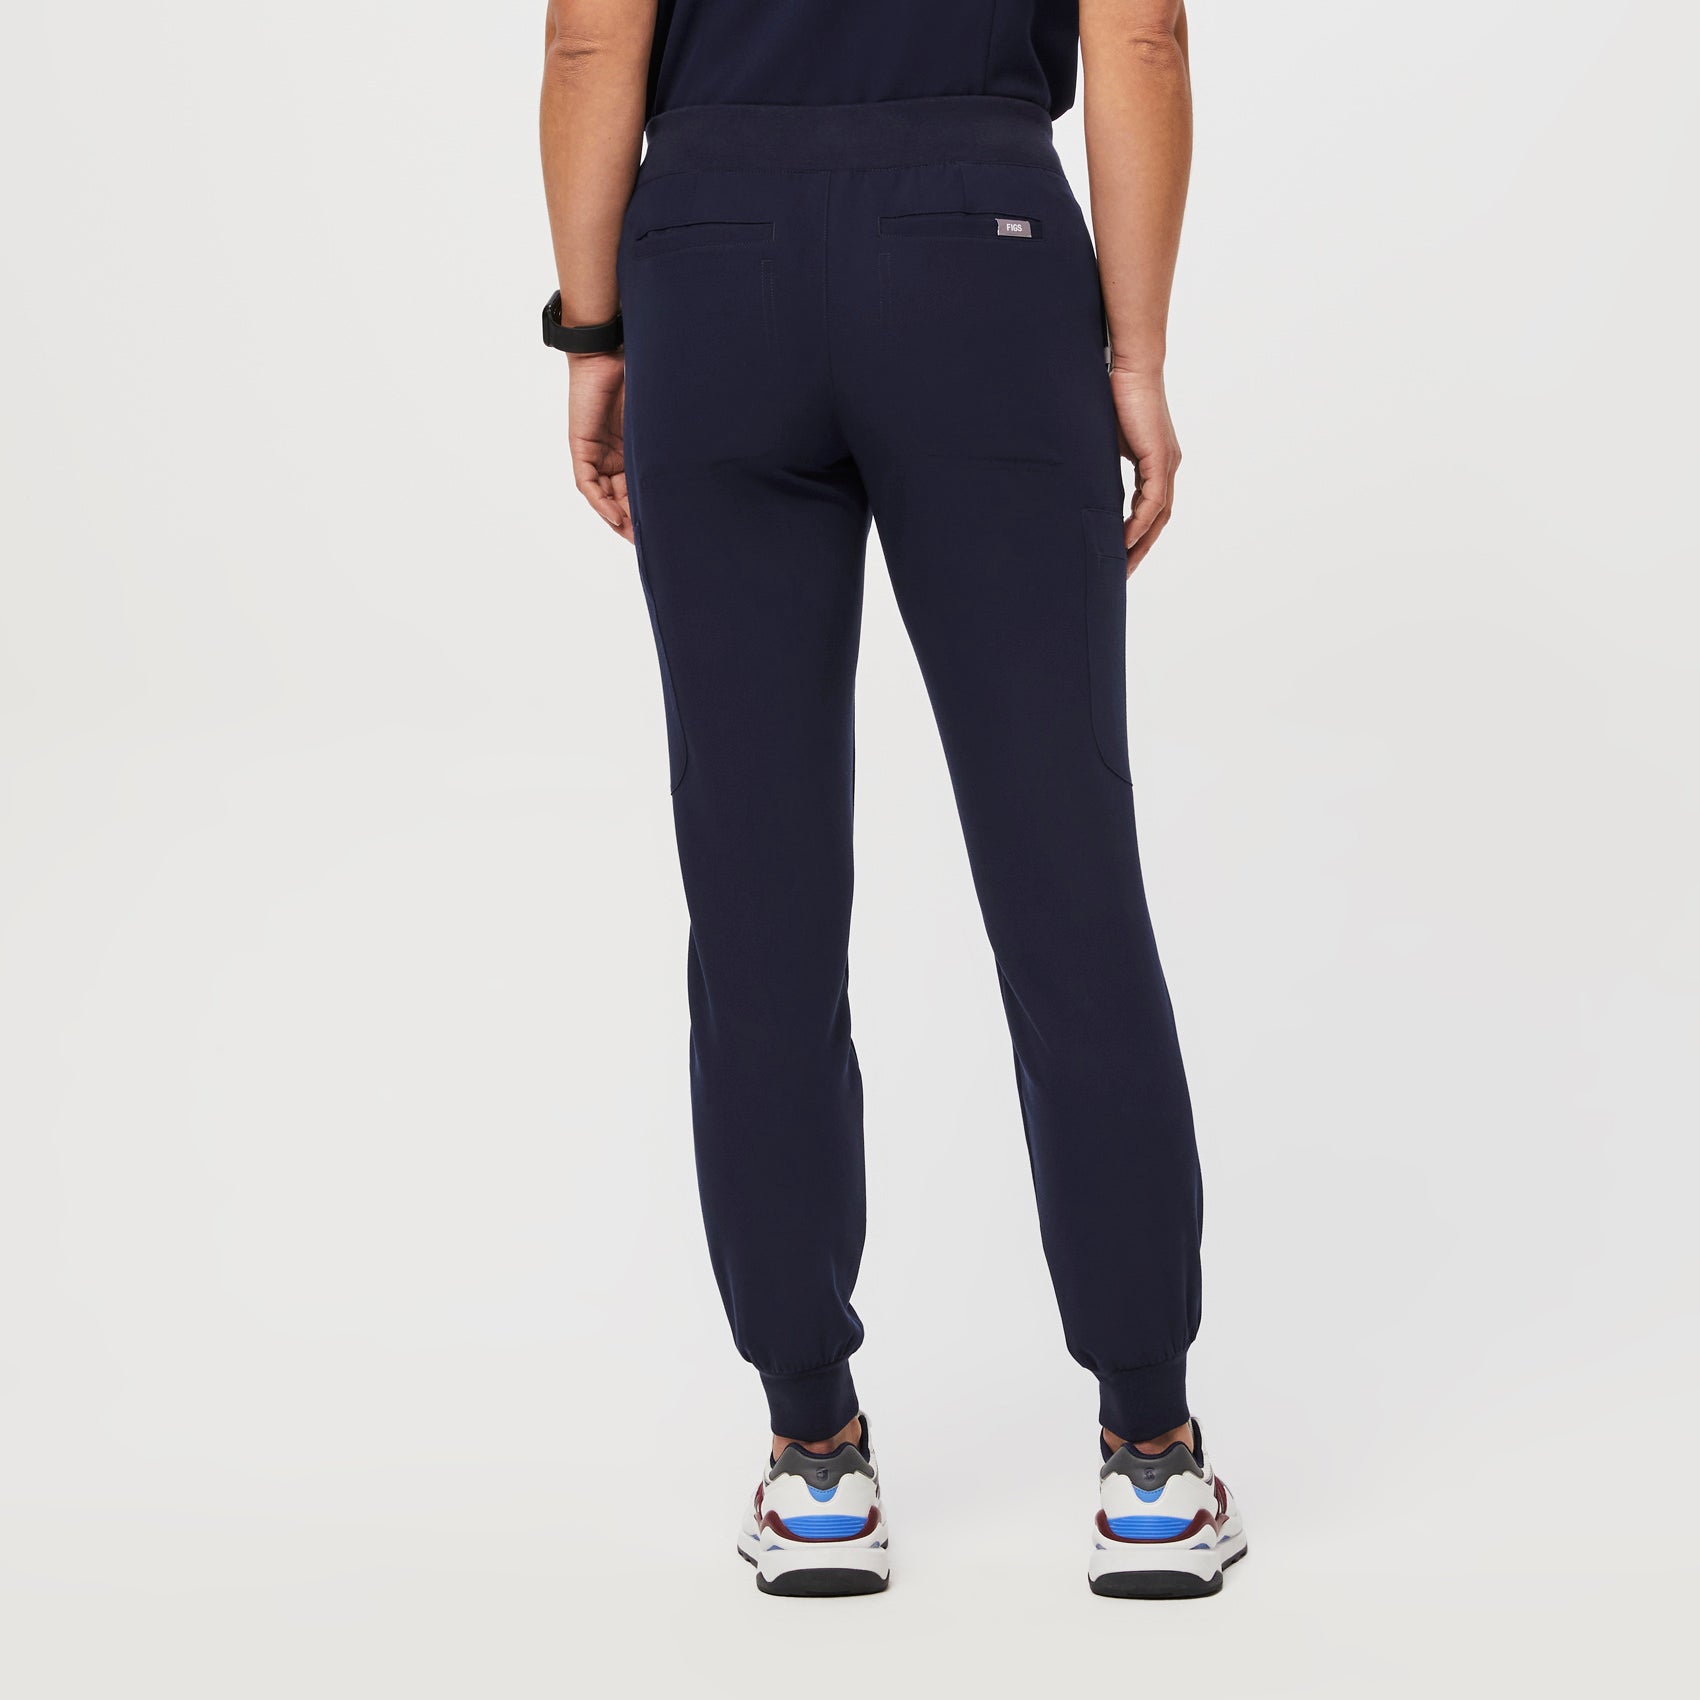 Pantalón deportivo de uniforme médico Muoy para mujer - Azul